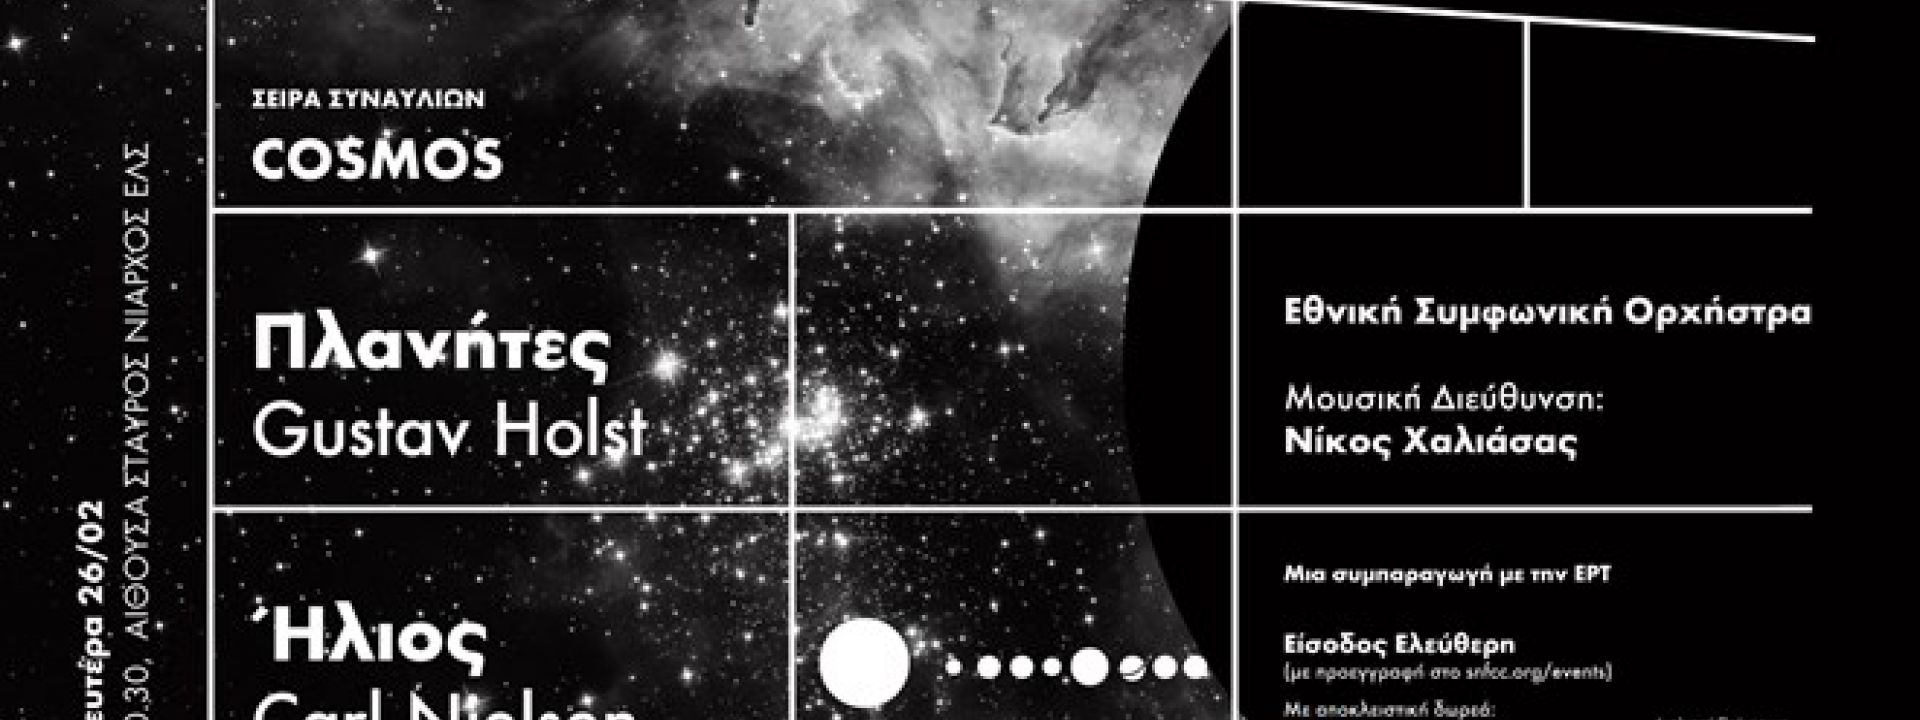 Σειρά συναυλιών Cosmos Εθνική Συμφωνική Ορχήστρα | Πλανήτες του Gustav Holst, Ήλιος του Carl Nielsen